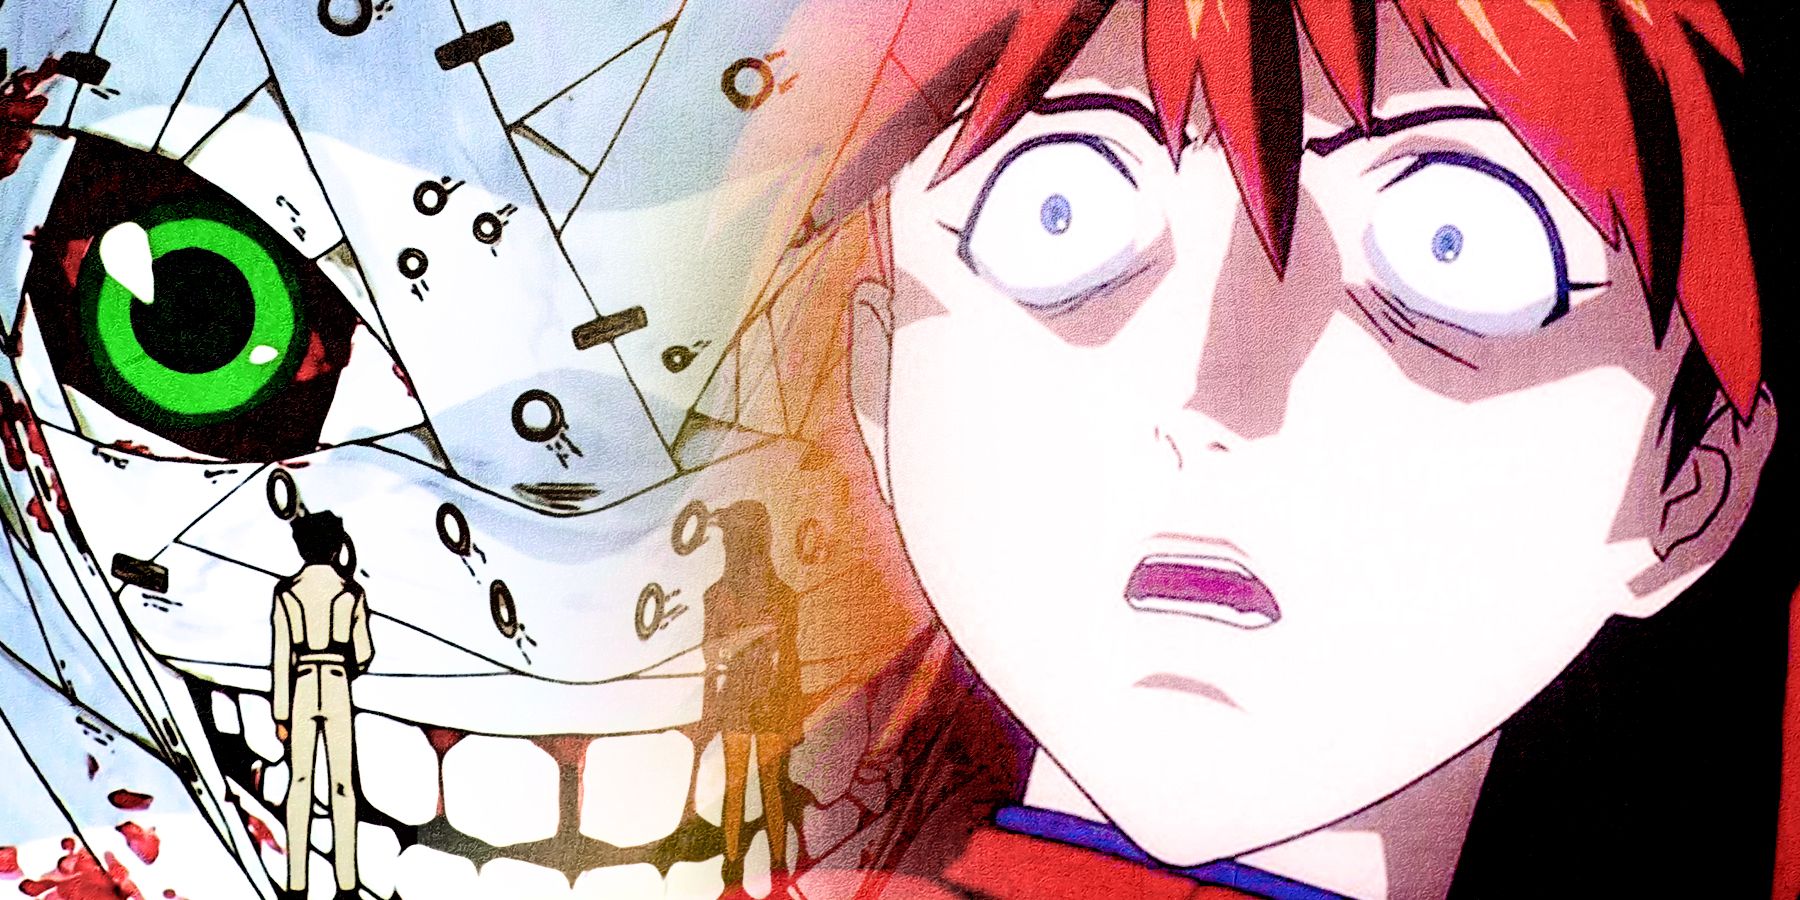 Evangelion Manga vs Anime: Which Ending Was Better? - Evangelion EXPLAINED  